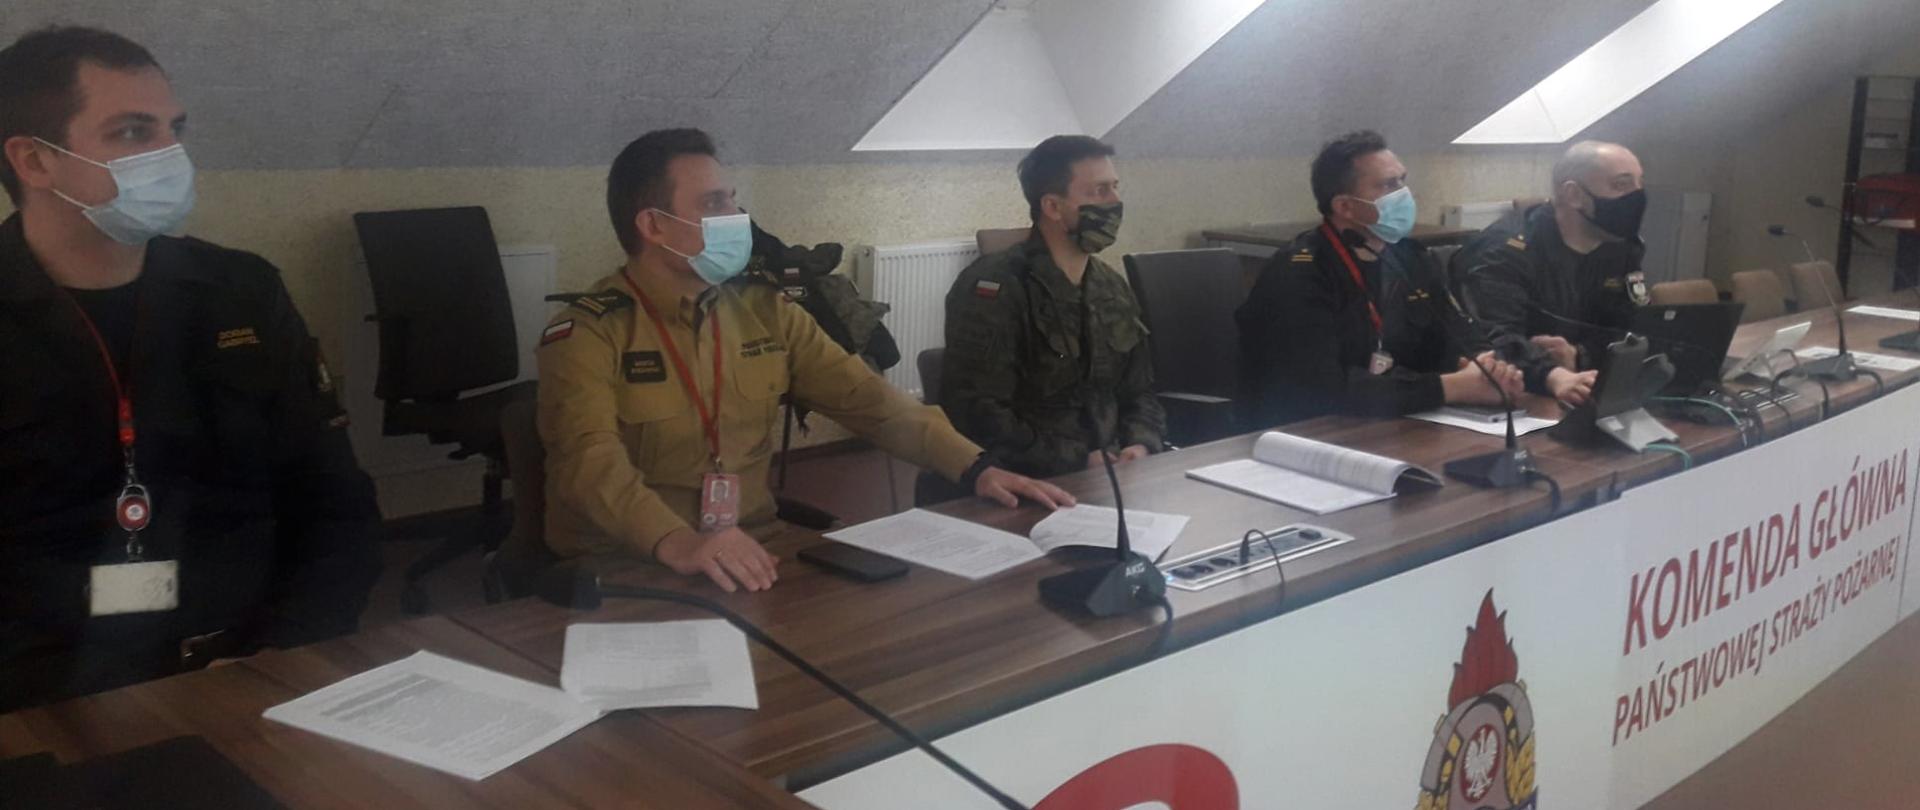 Czterech funkcjonariuszy PSP oraz jeden z wojskowej ochrony przeciwpożarowej (po środku) siedzą przy biurku podczas spotkania, patrzą przed siebie